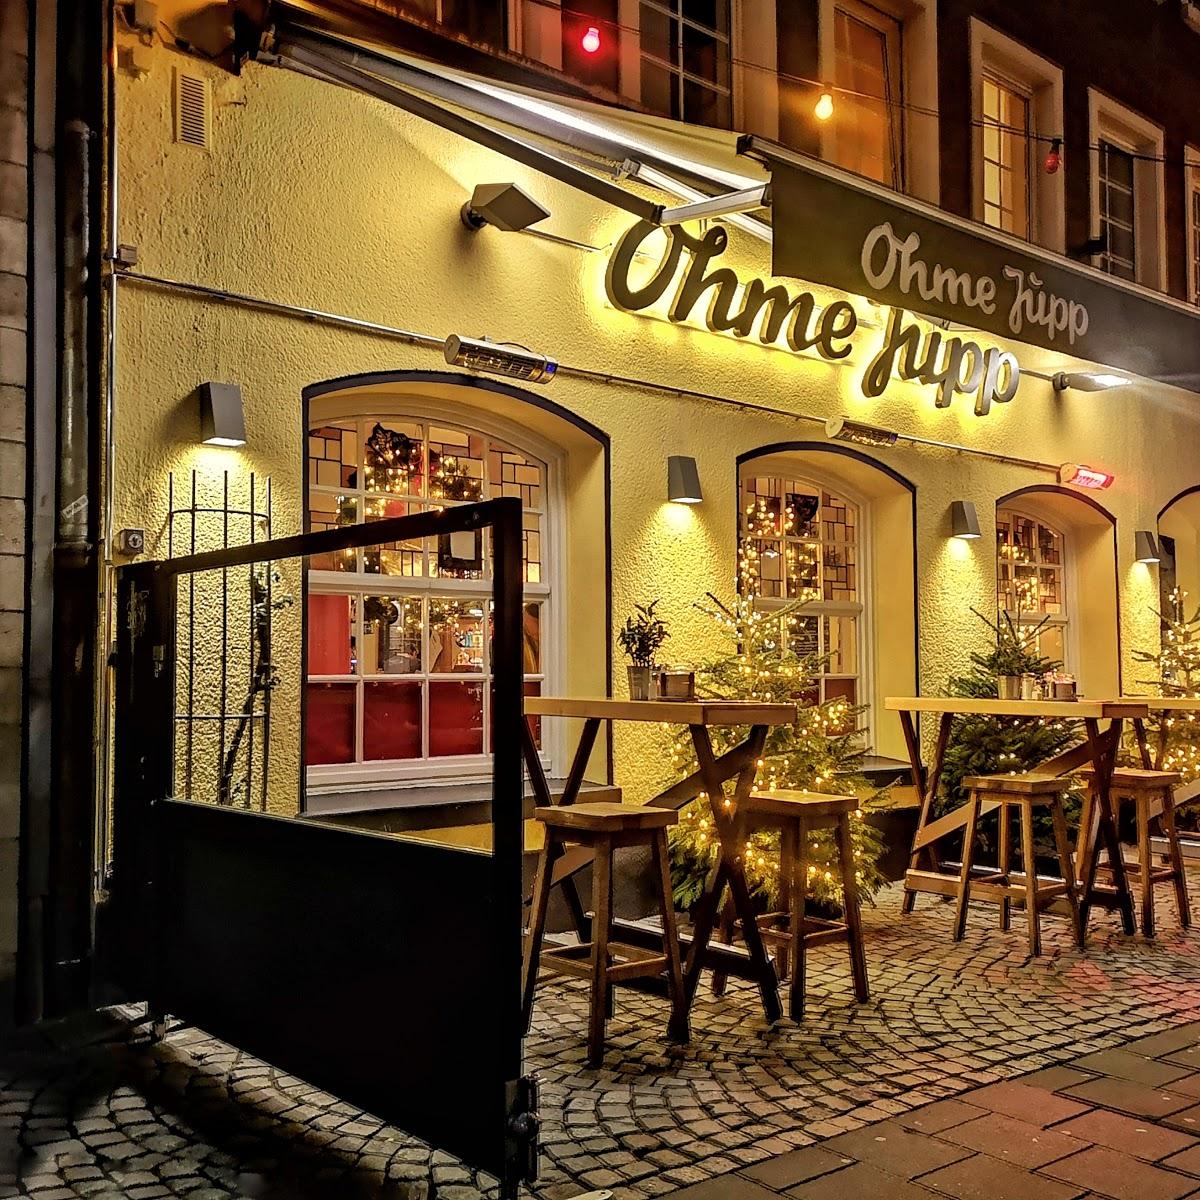 Restaurant "Ohme Jupp" in Düsseldorf